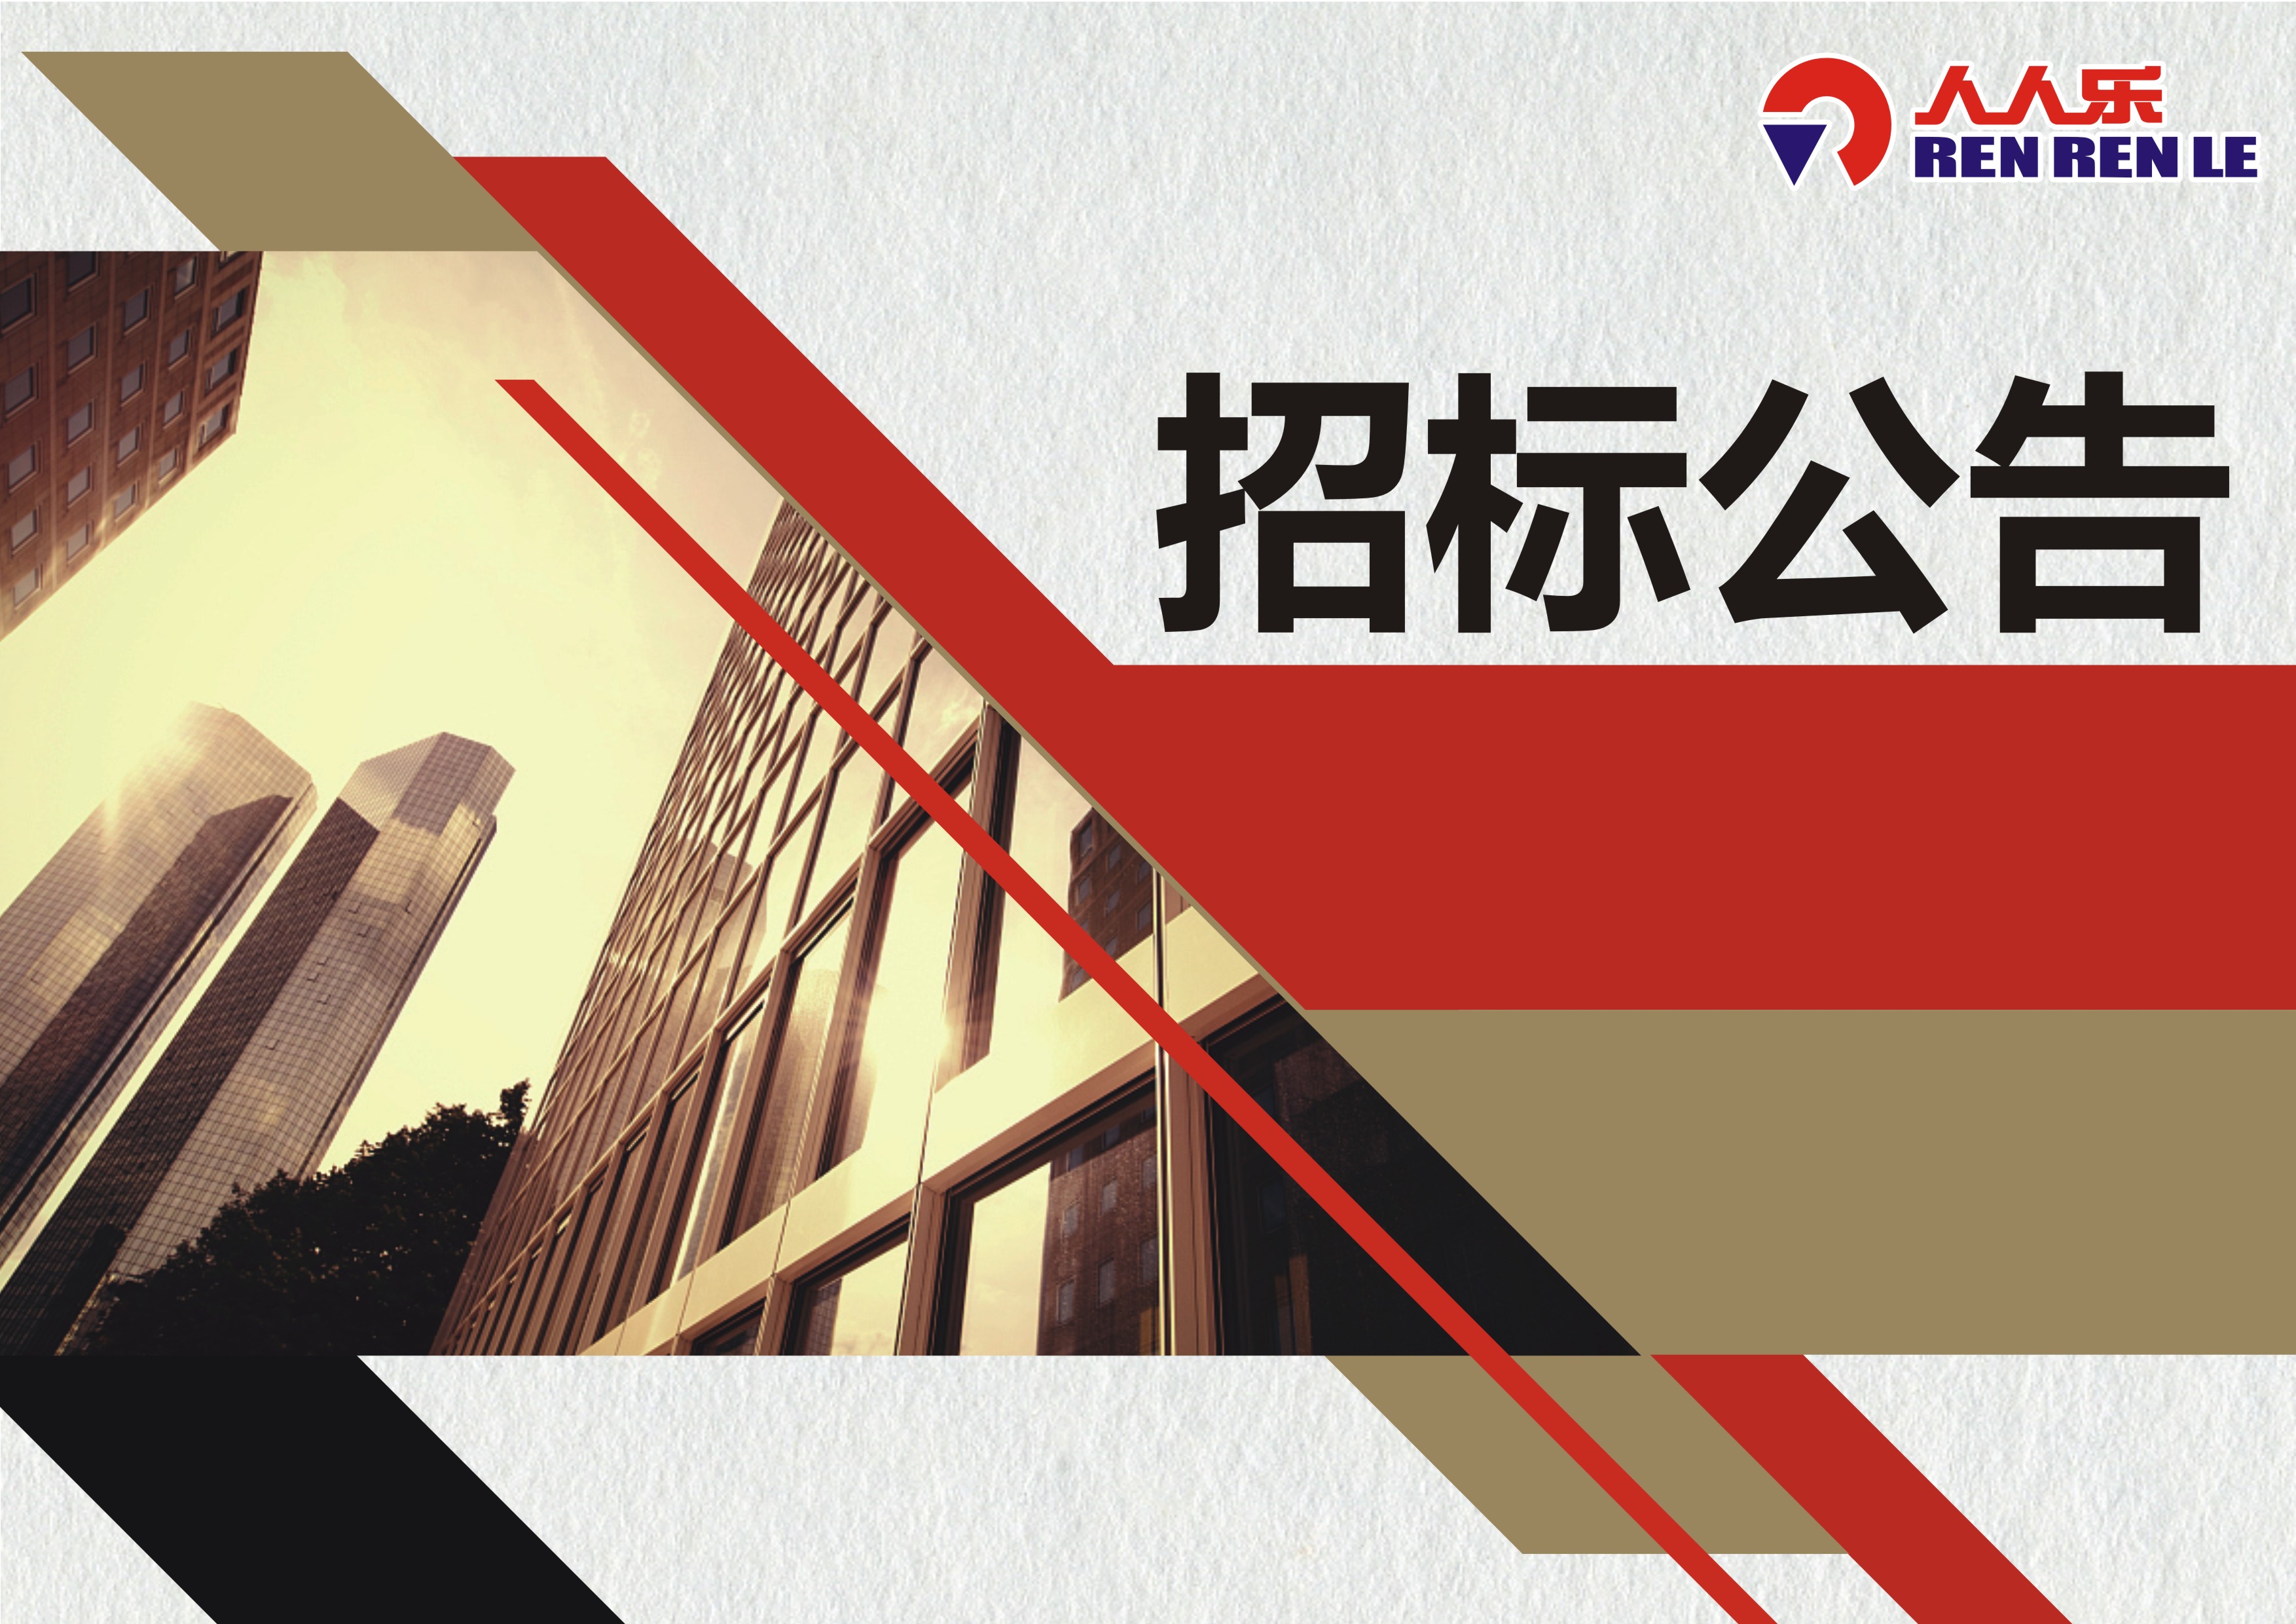 桂林市人人乐商业有限公司电梯设备维护保养项目招标